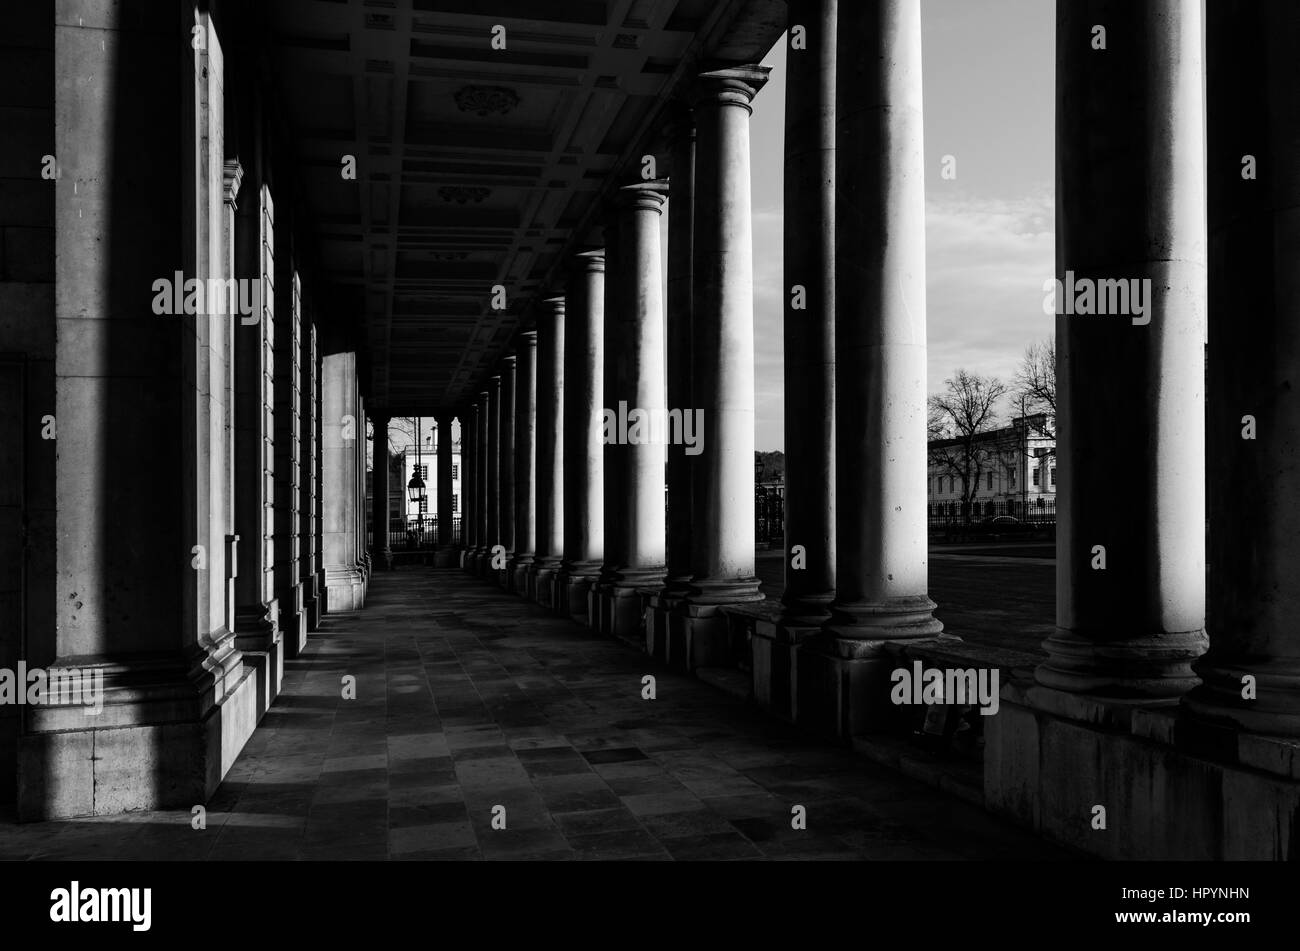 La columnata en el Old Royal Naval College de Greenwich, Londres. Foto de stock